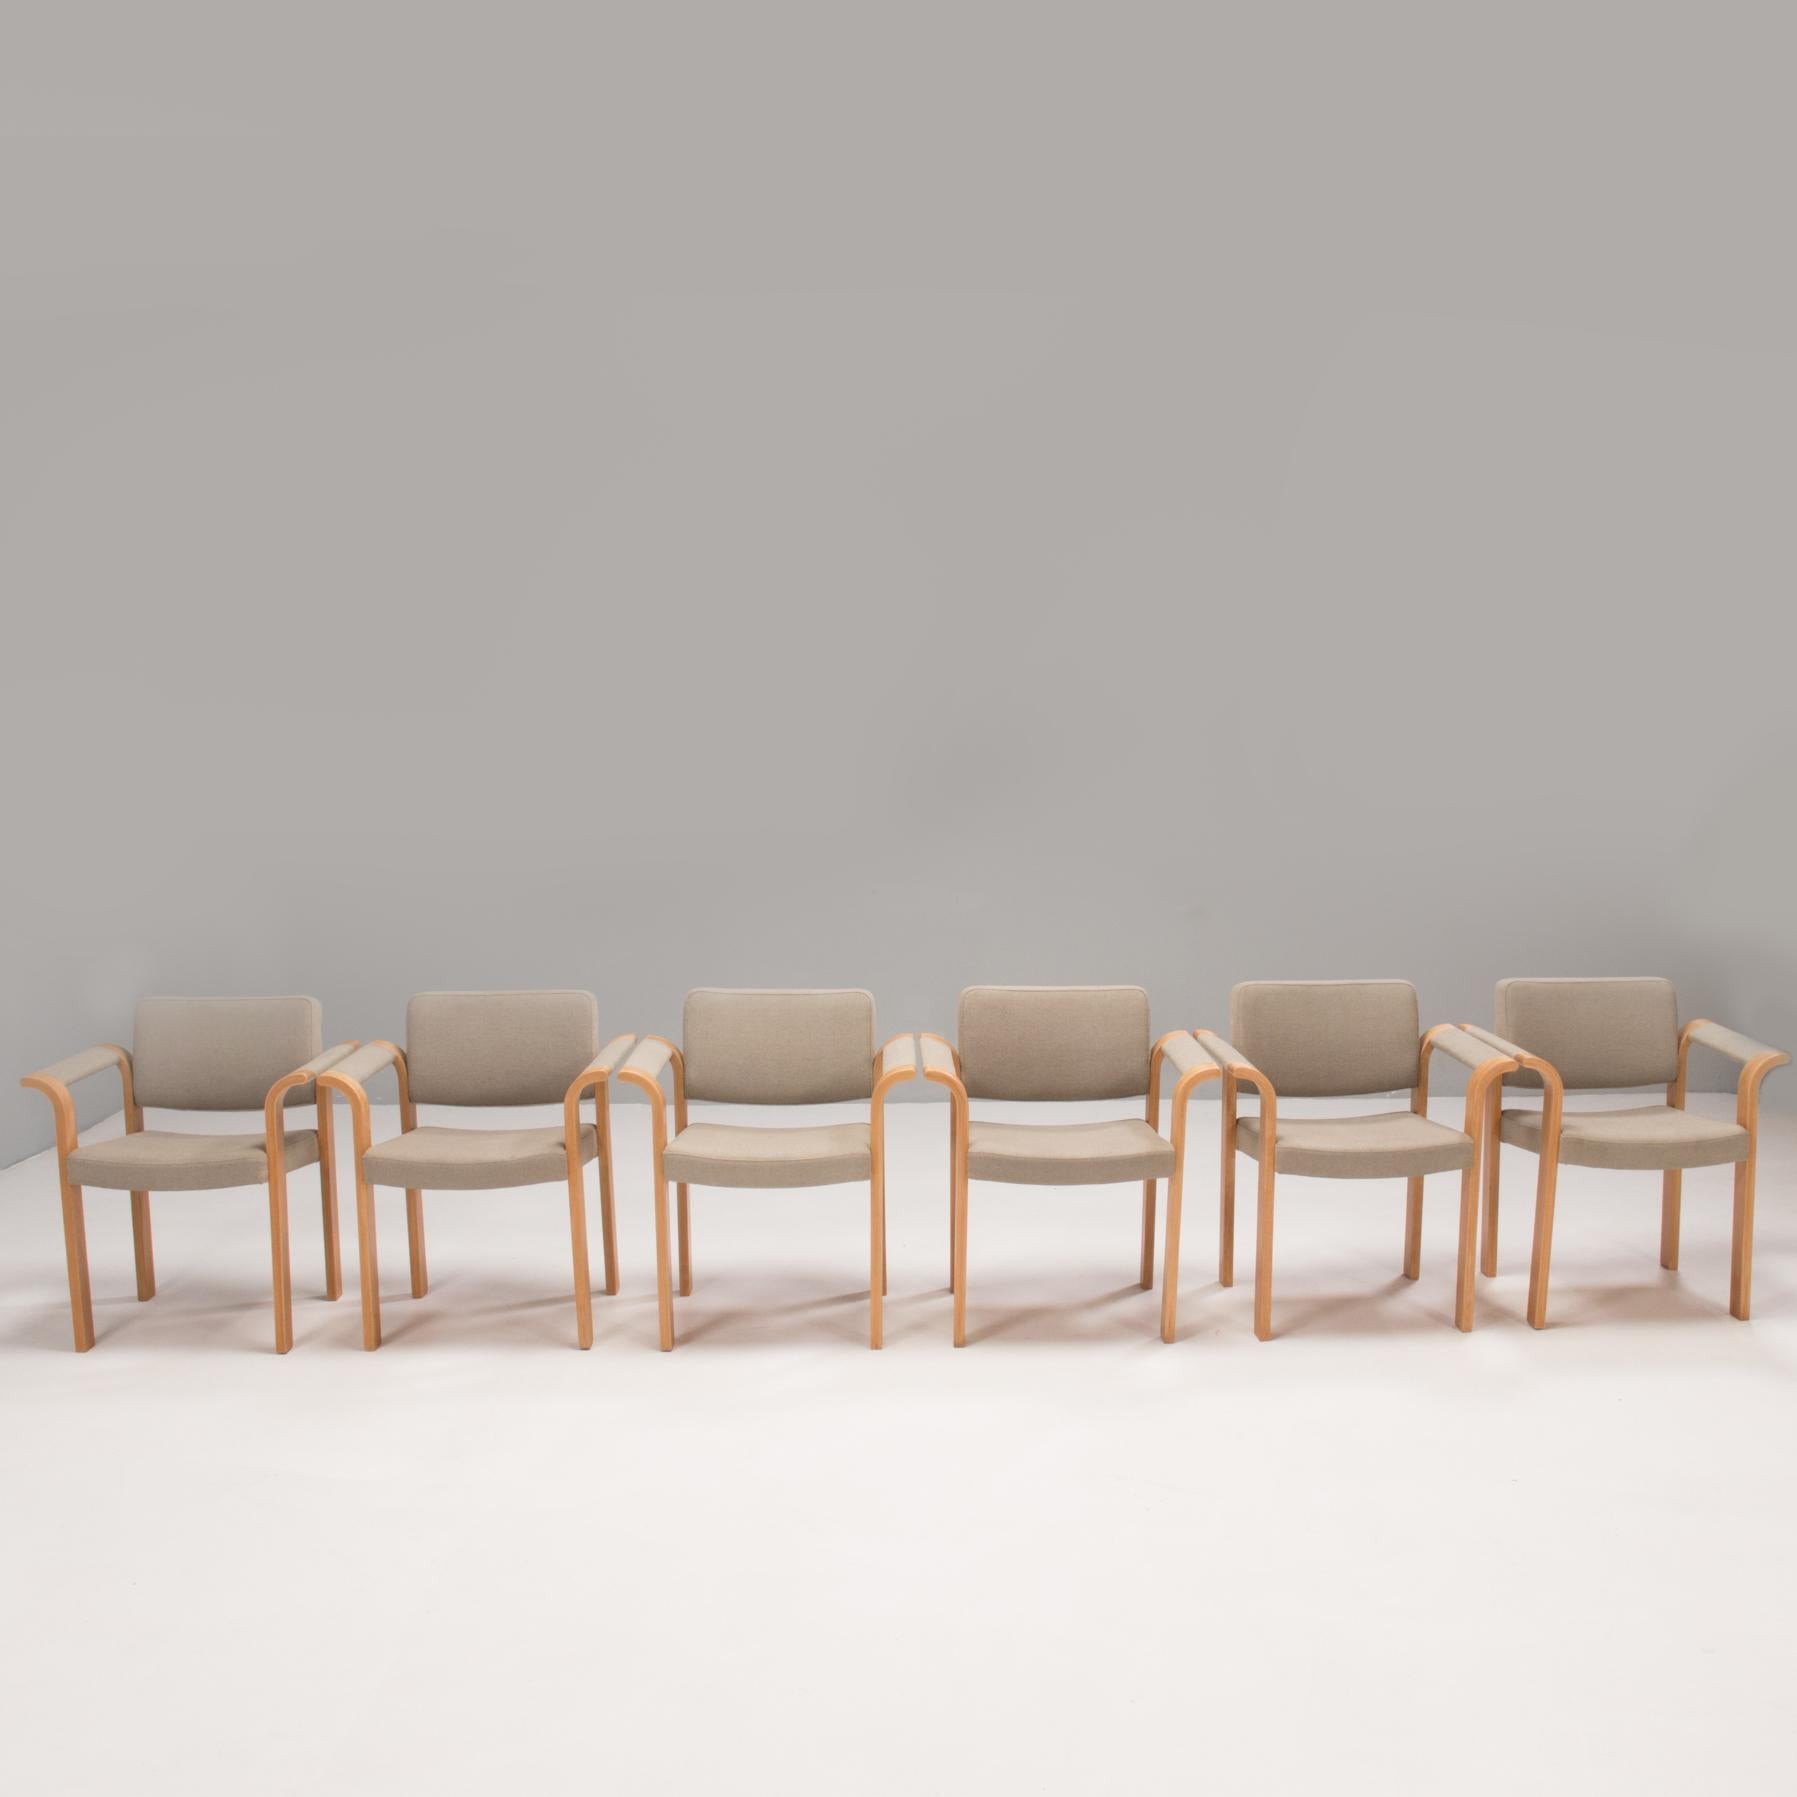 Diese von Rud Thygesen & Johnny Sørensen entworfenen und von Magnus Olesen hergestellten Stühle sind ein fantastisches Beispiel für dänisches Design der 1970er Jahre.

Die Stühle mit Rahmen aus laminiertem Holz haben eine geradlinige Silhouette,